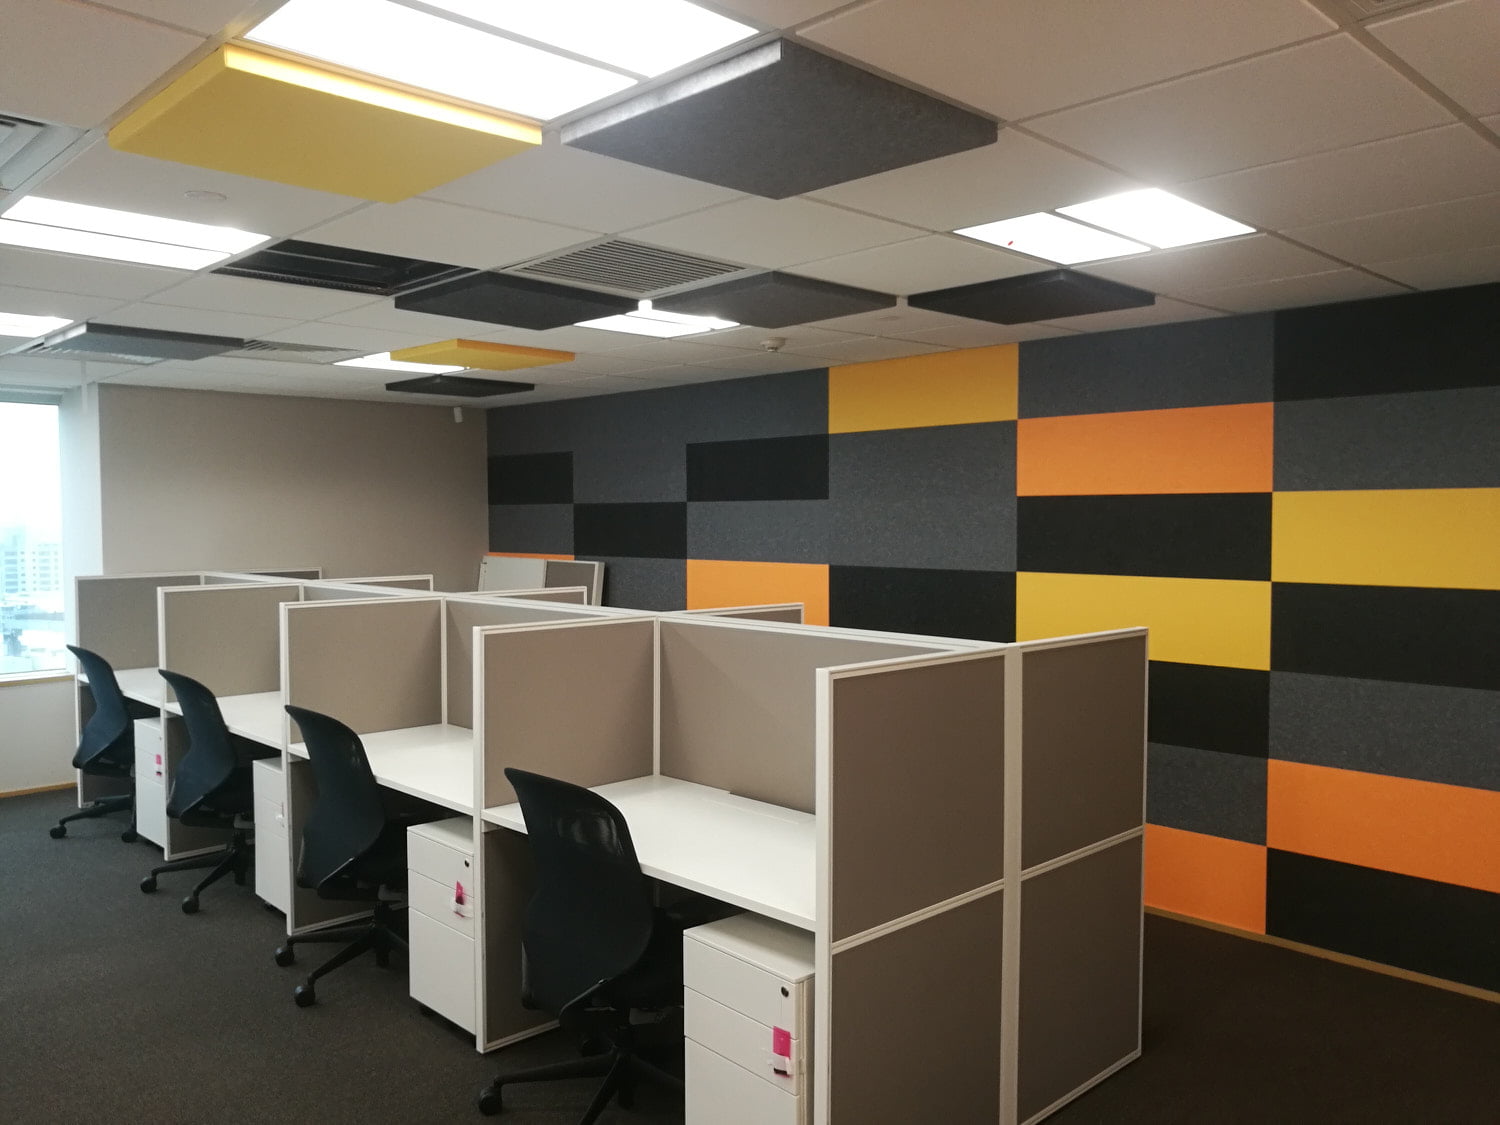 Faux plafond, Dalles - Bureaux, Open Space, Office - Travaux